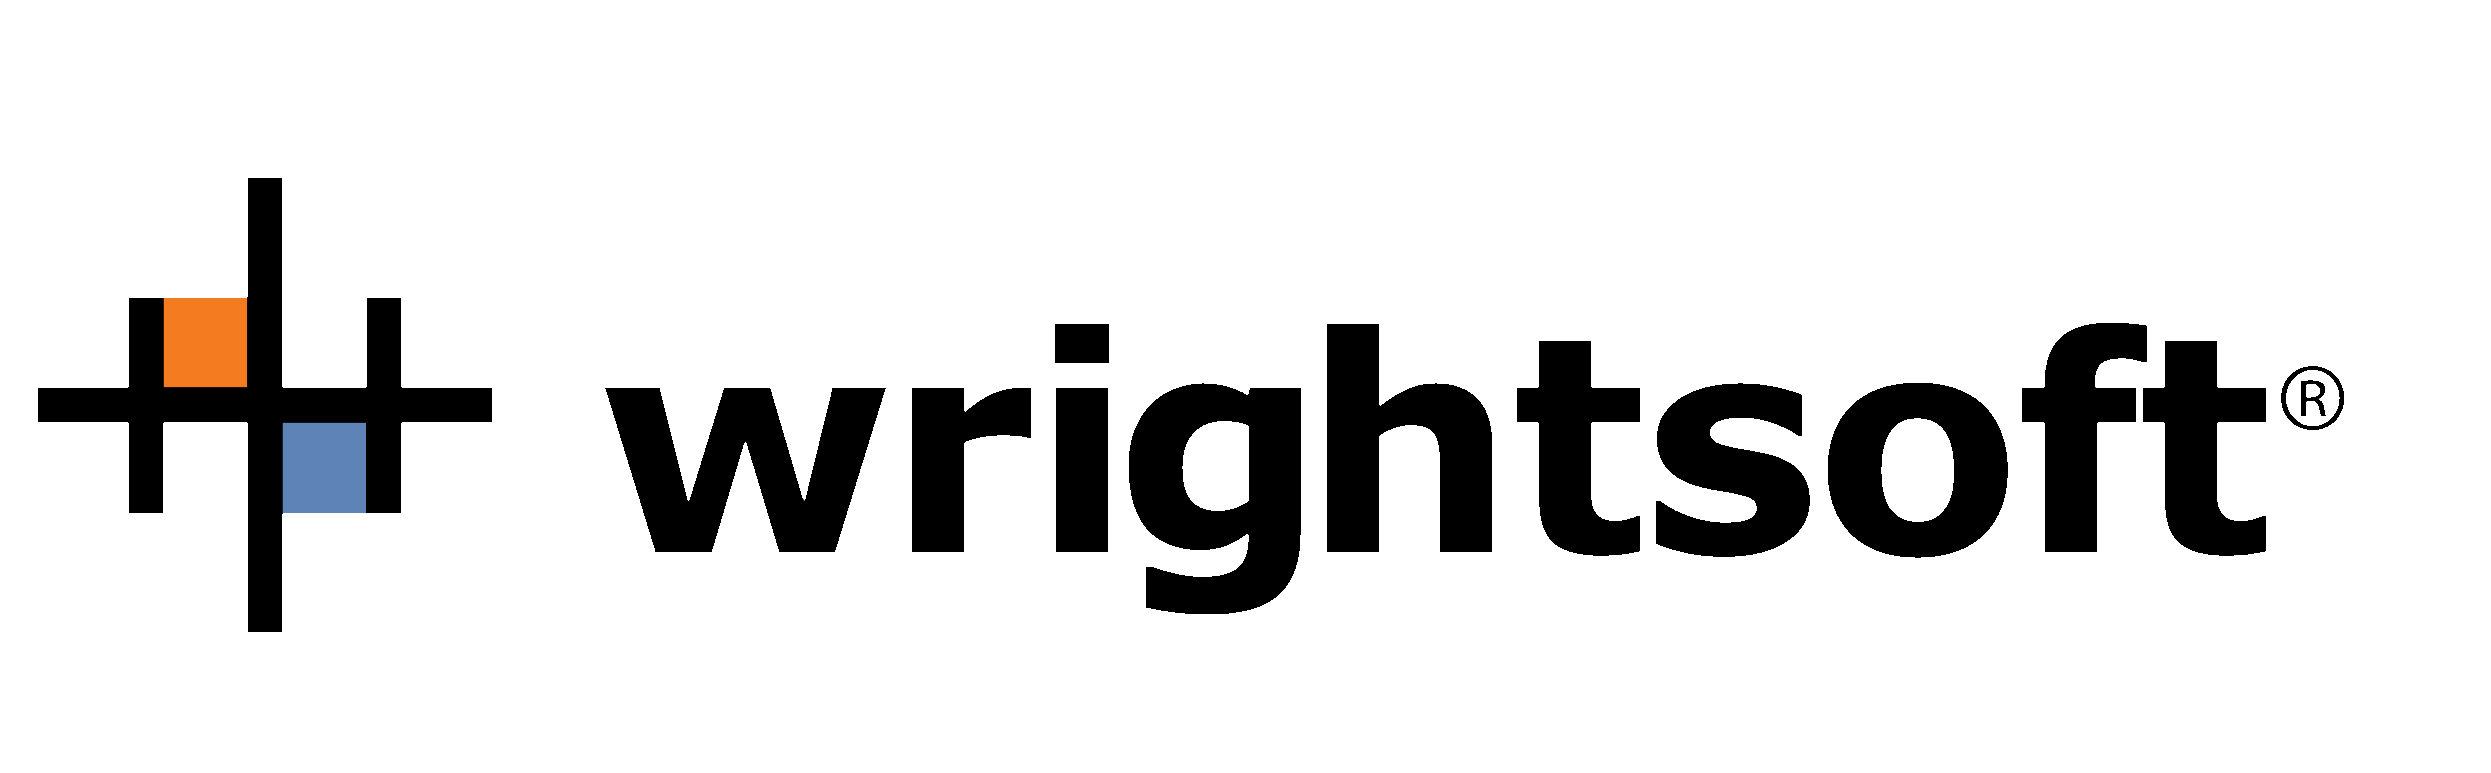 Wrightsoft-Logo.wine.png